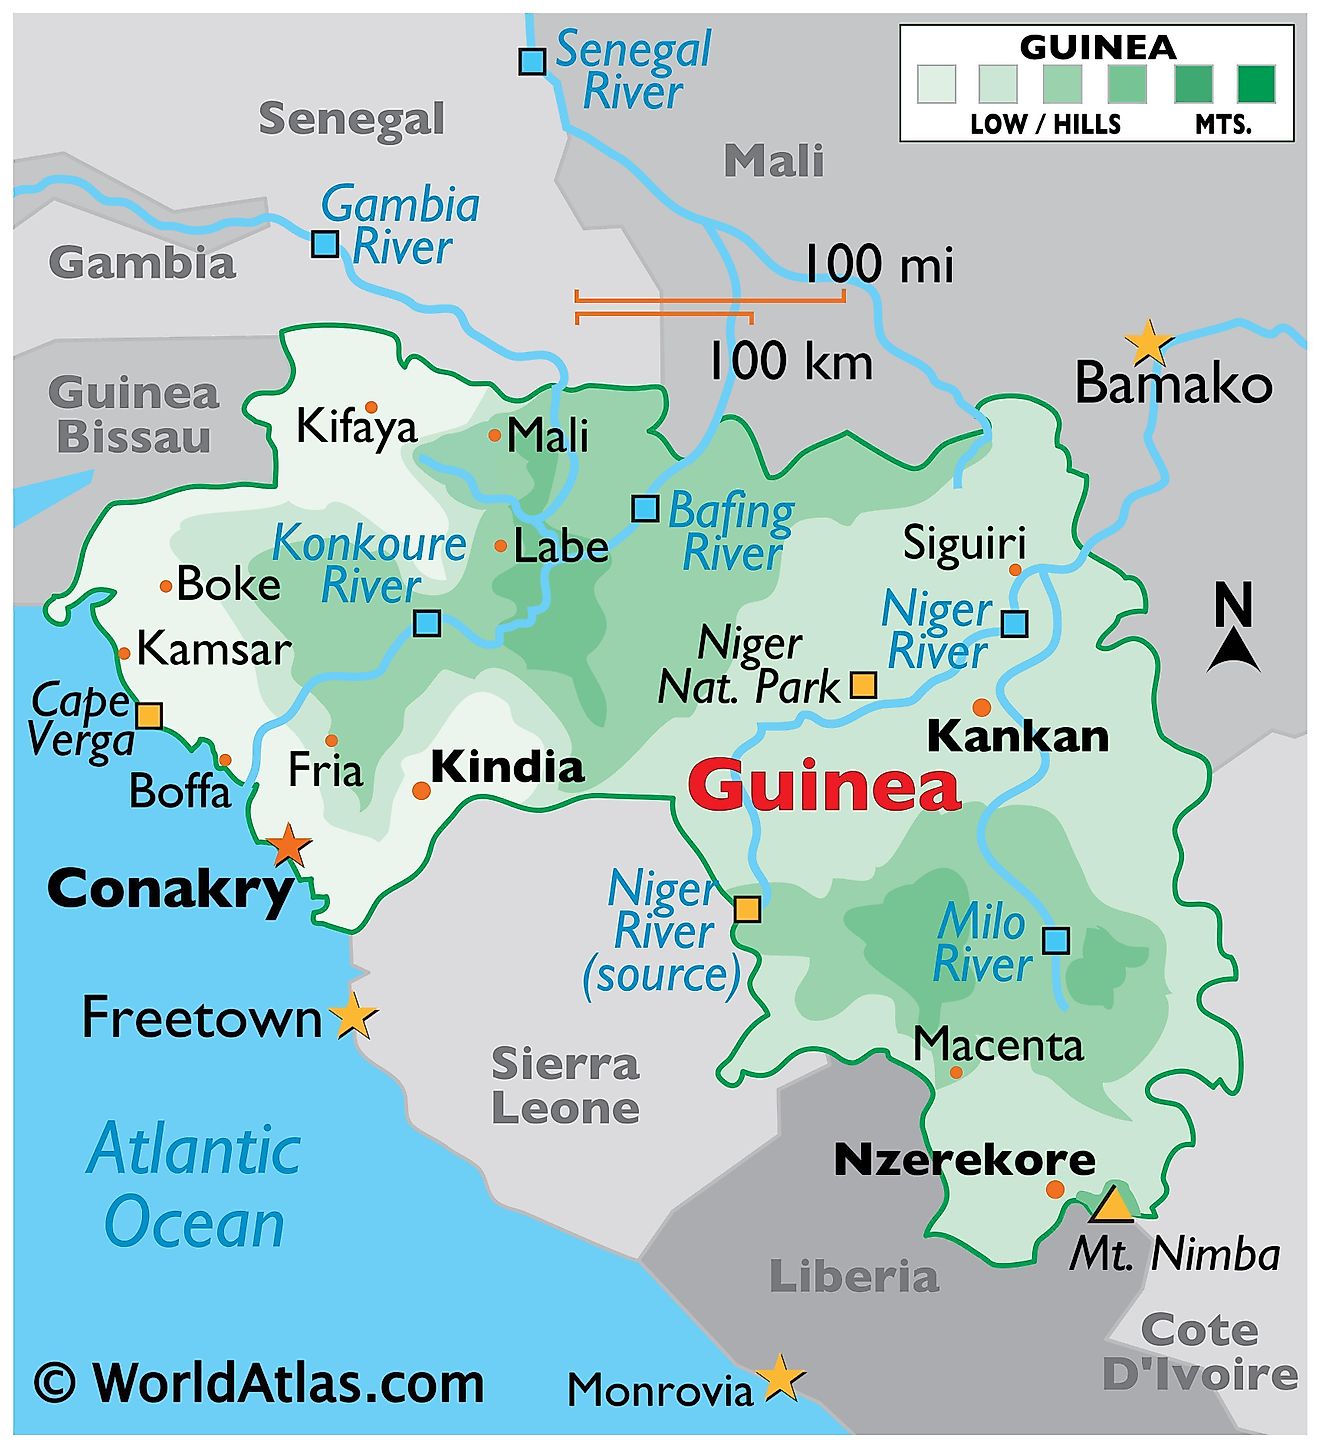 Mapa físico de Guinea que muestra los límites de su estado, el relieve, los principales ríos, las ciudades importantes, la elevación más alta, etc.